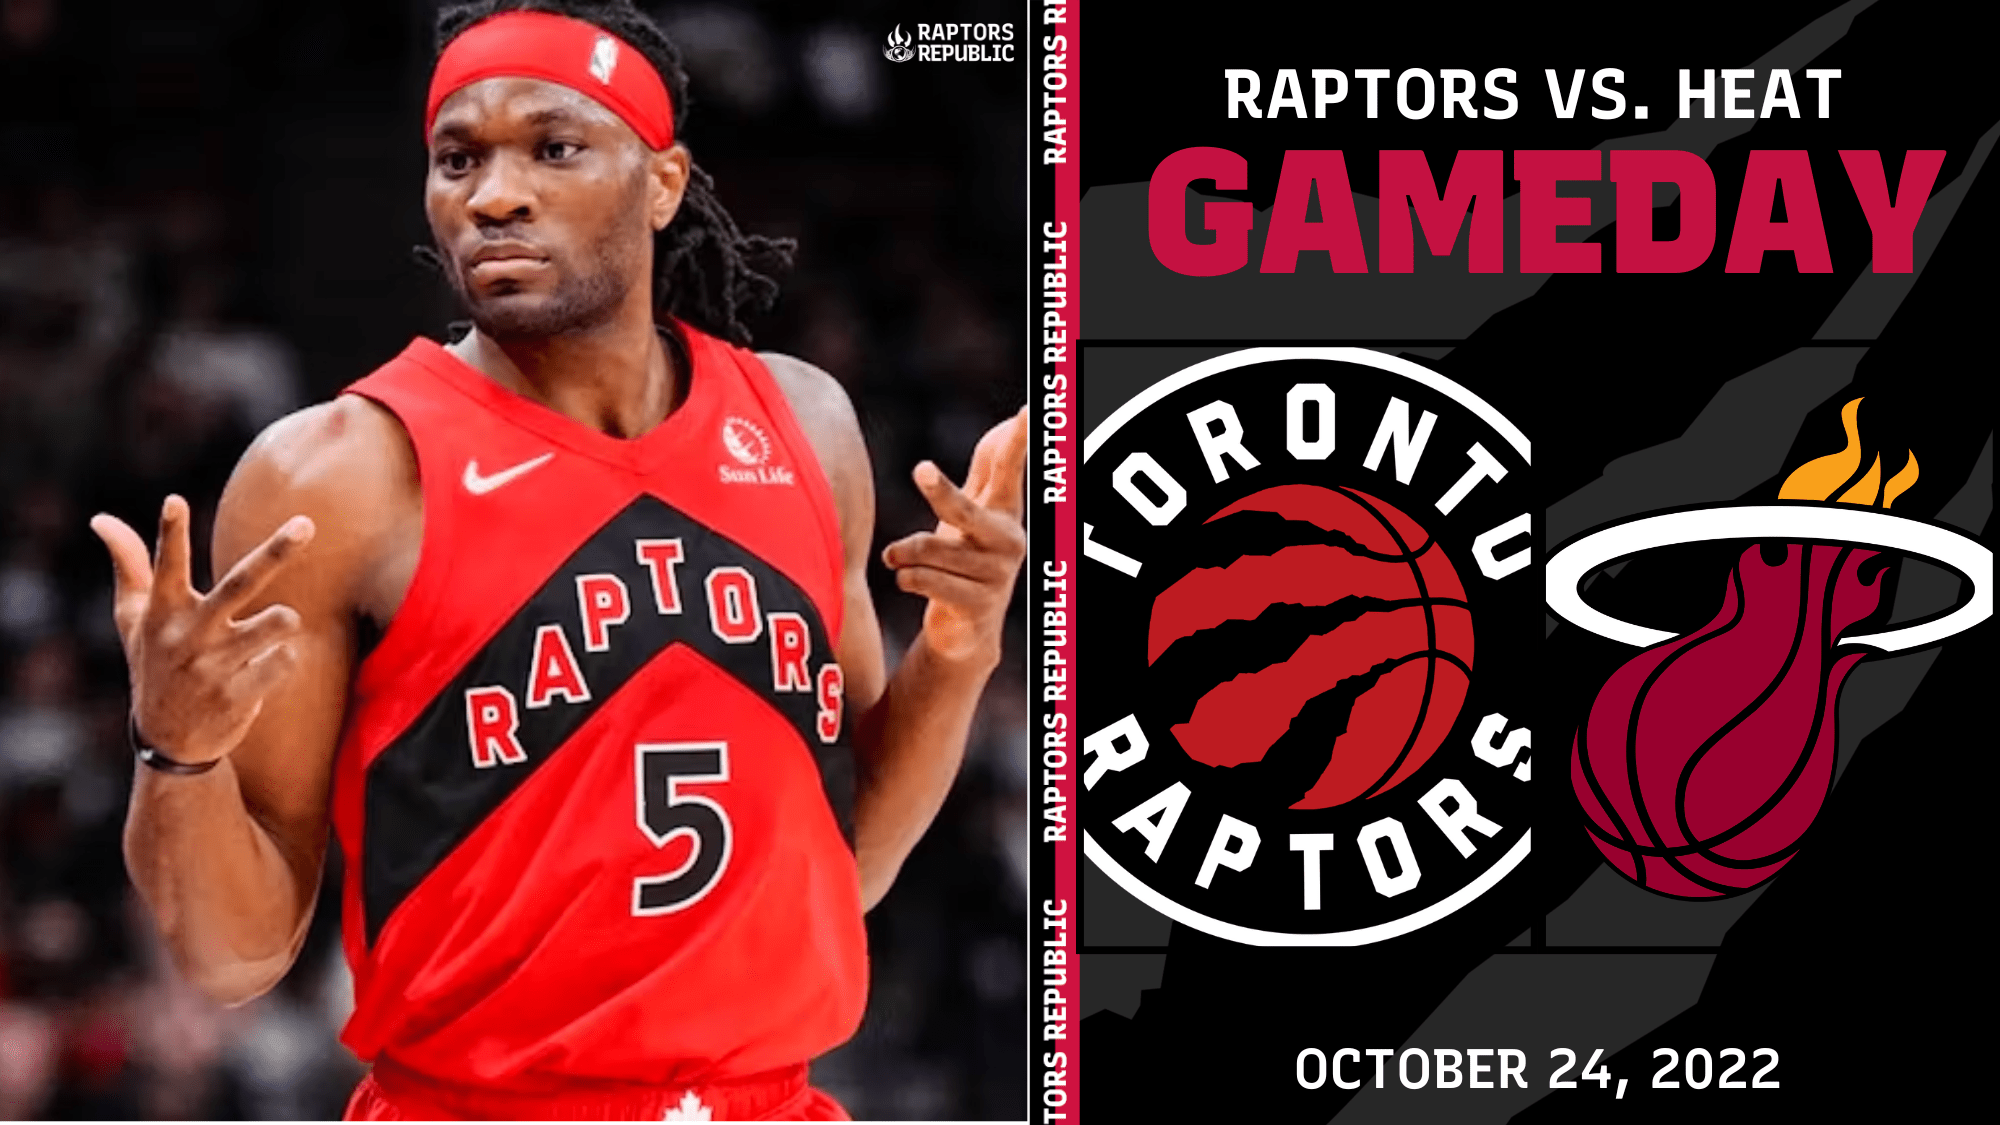 Gameday: Raptors @ Heat, October 24